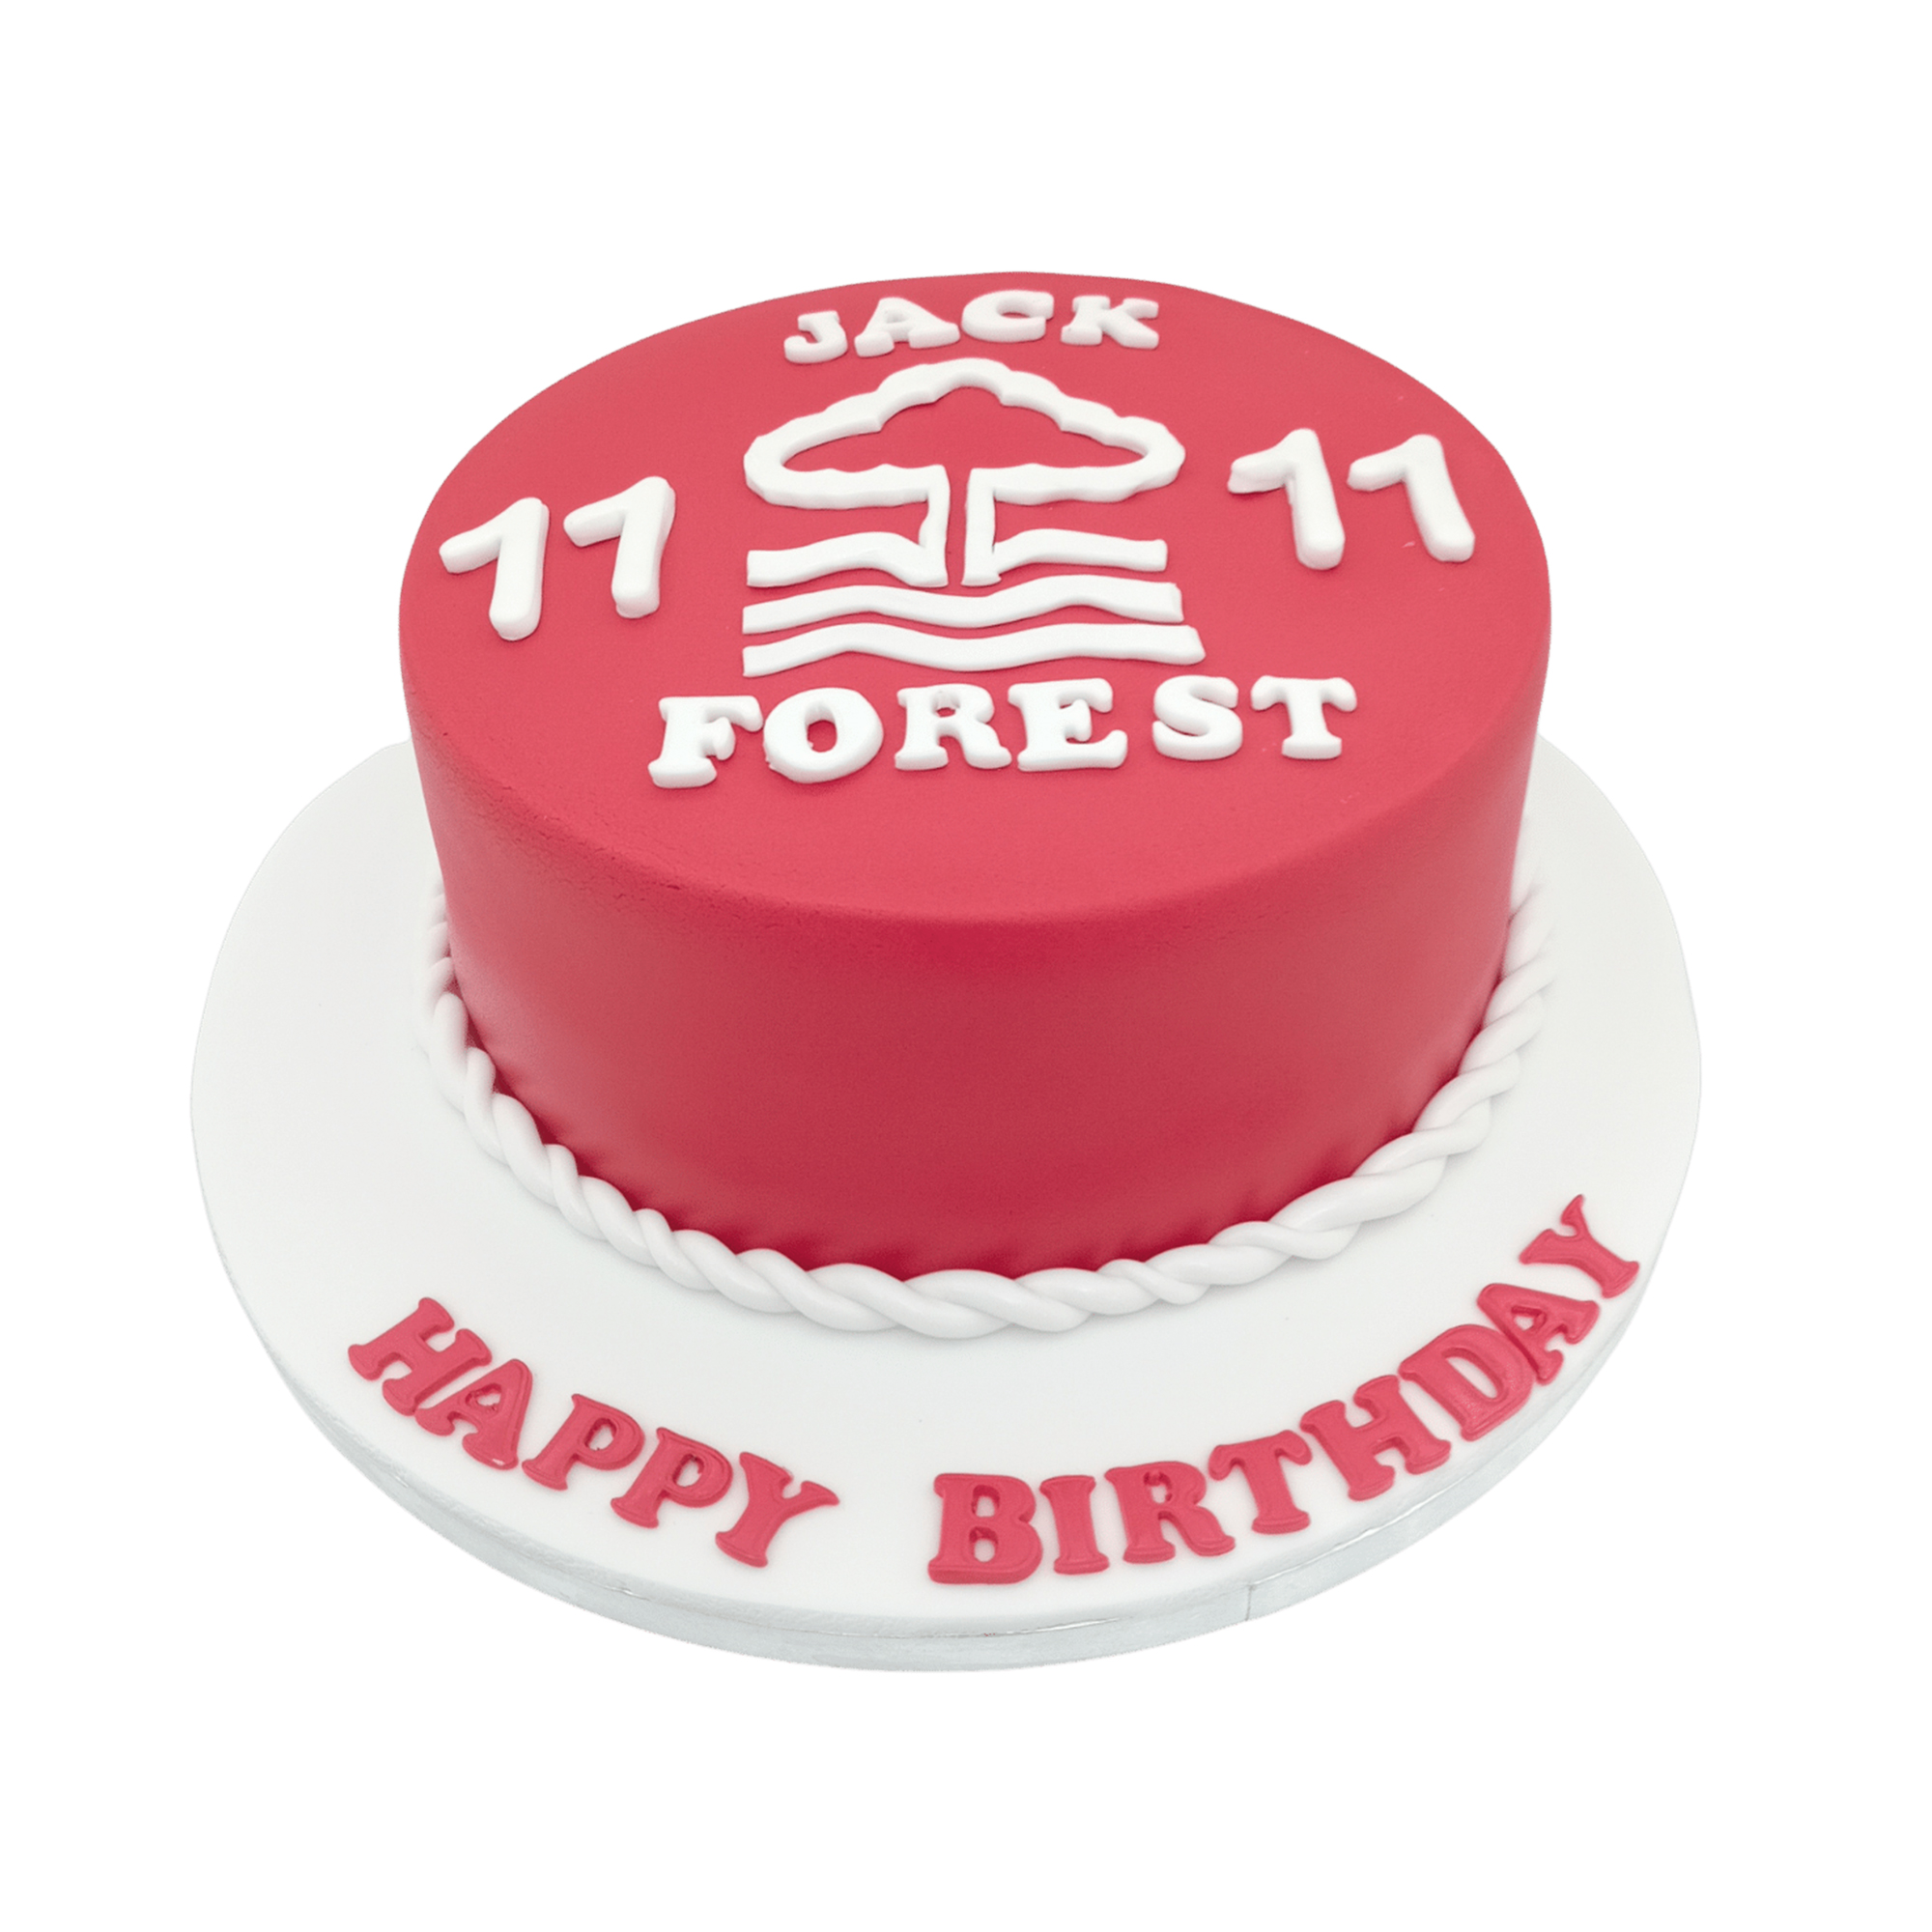 Nottingham Forest Cake